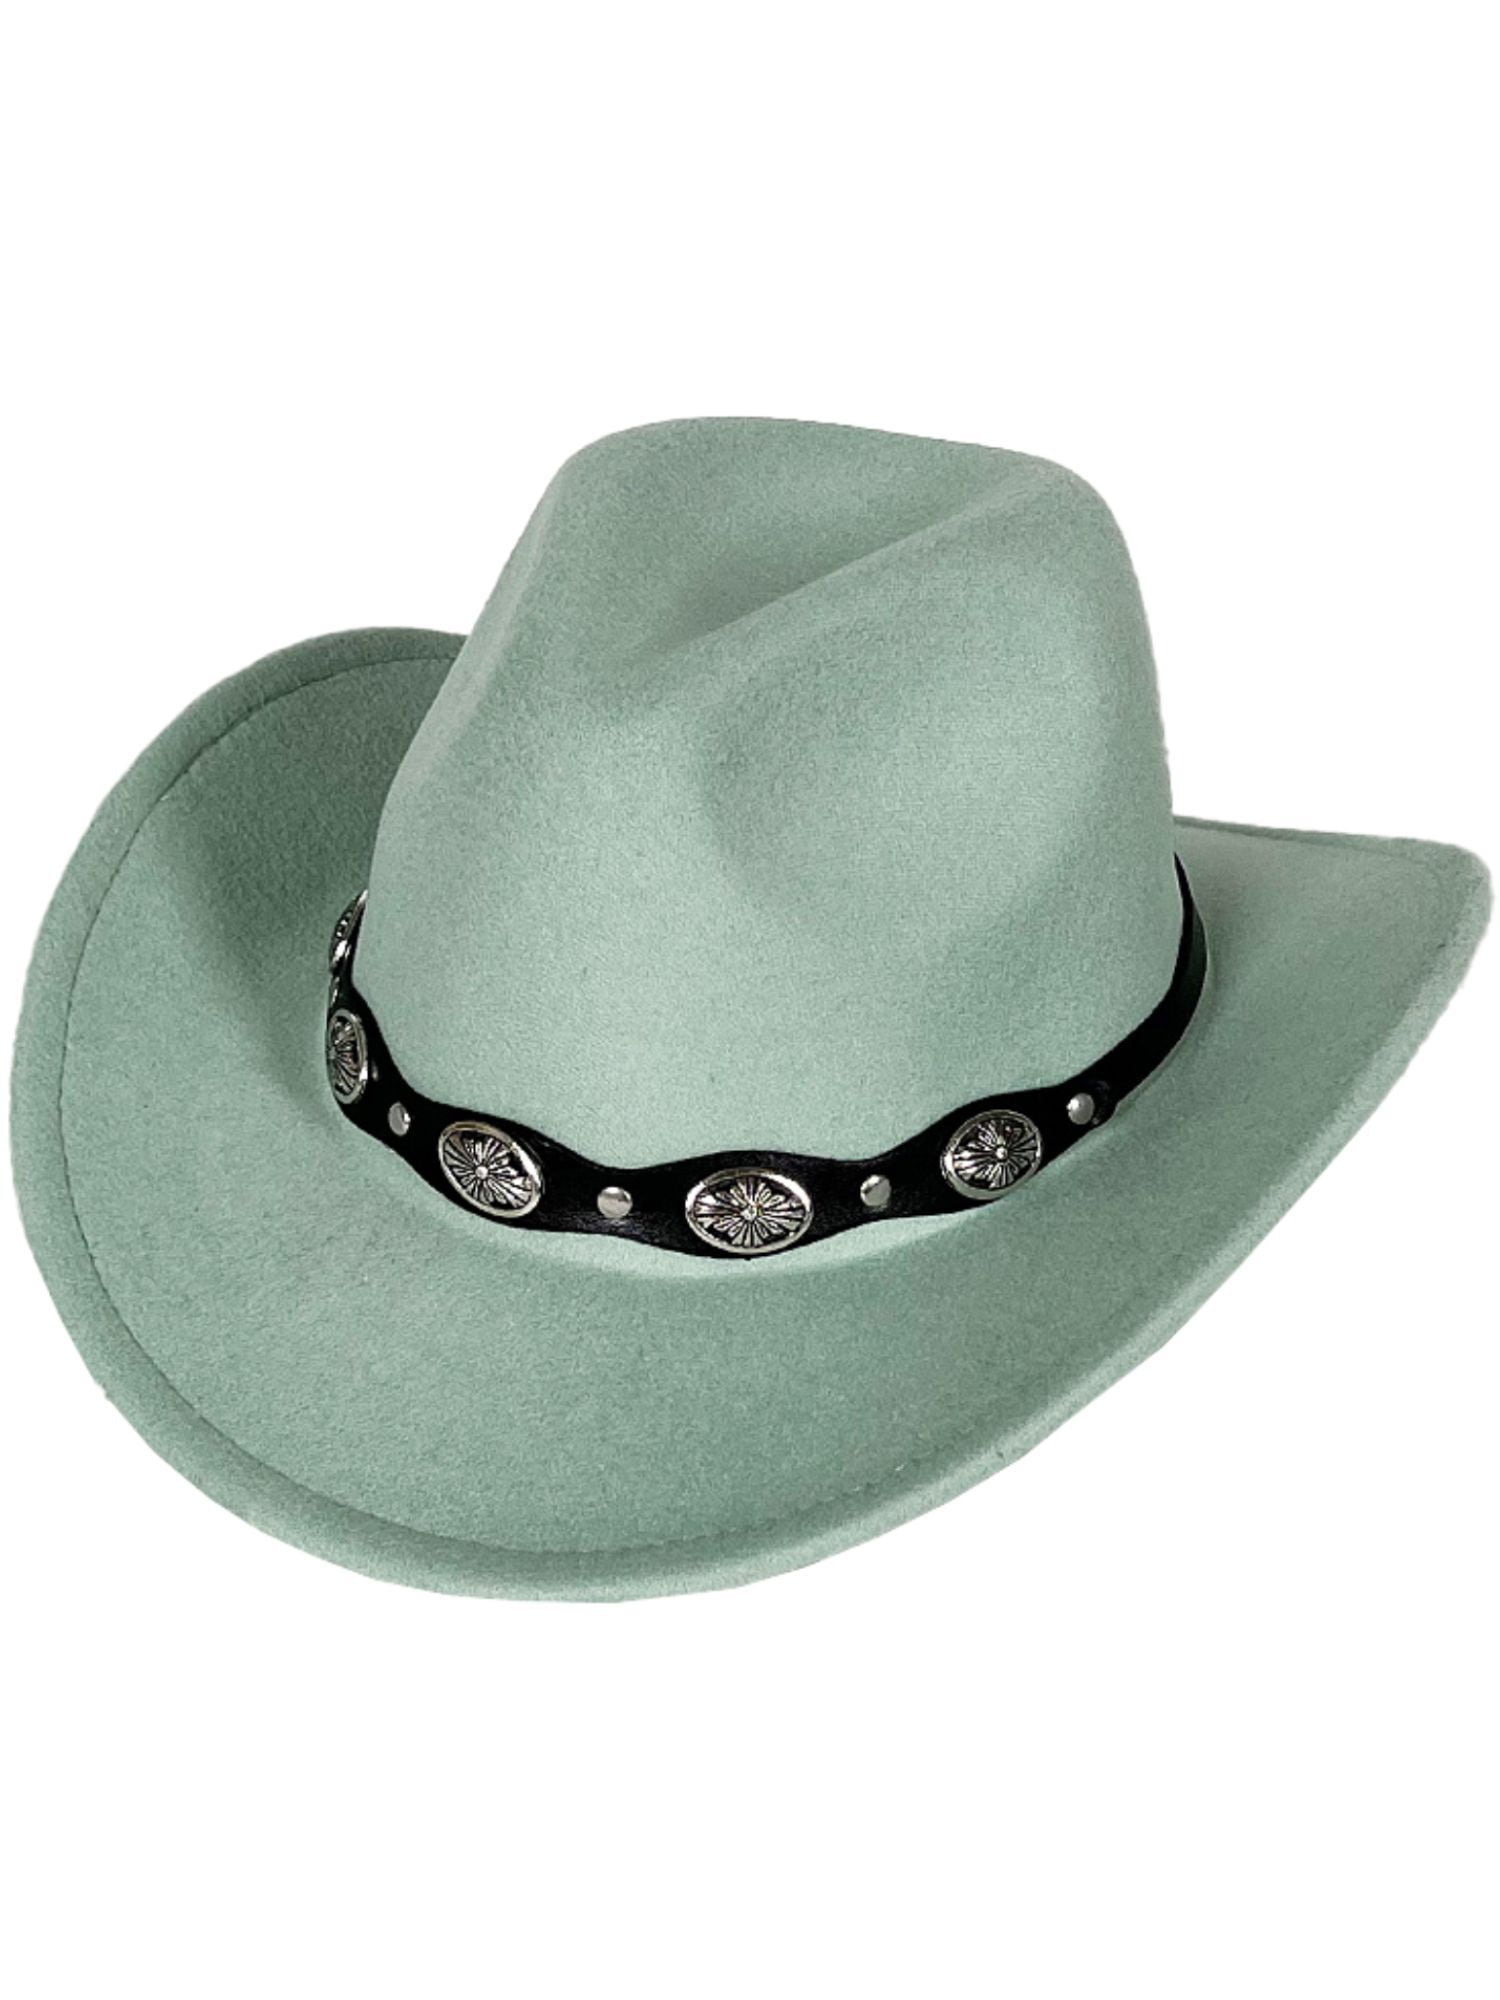 Besoogii Wide Brim Felt Cowboy Hat for Women Men Western Cowgirl Hats